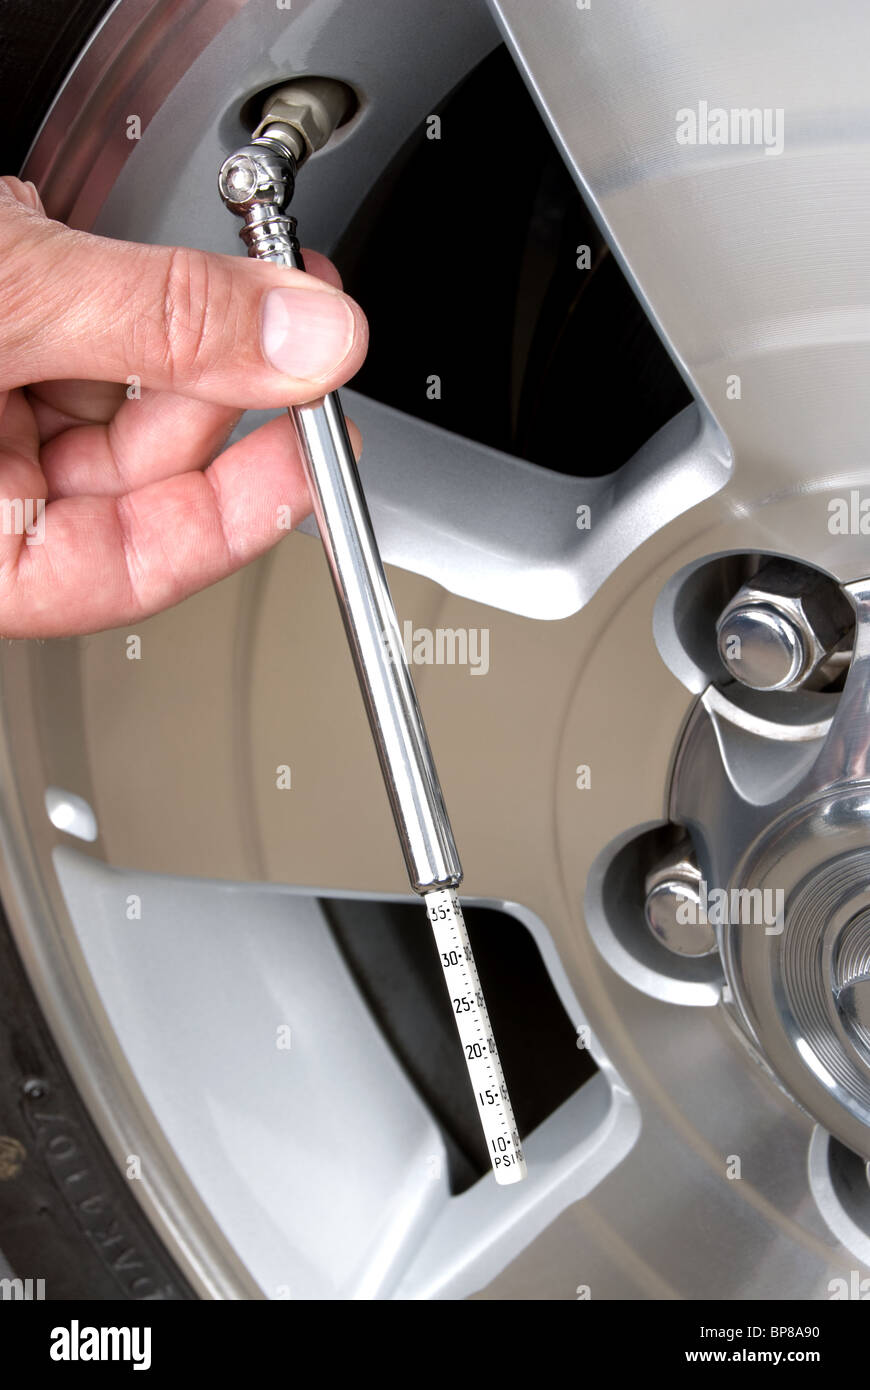 Persona che controlla la loro pressione dei pneumatici con un pneumatico gage. Questa è una buona immagine per responsabile manutenzione auto inferenze. Foto Stock